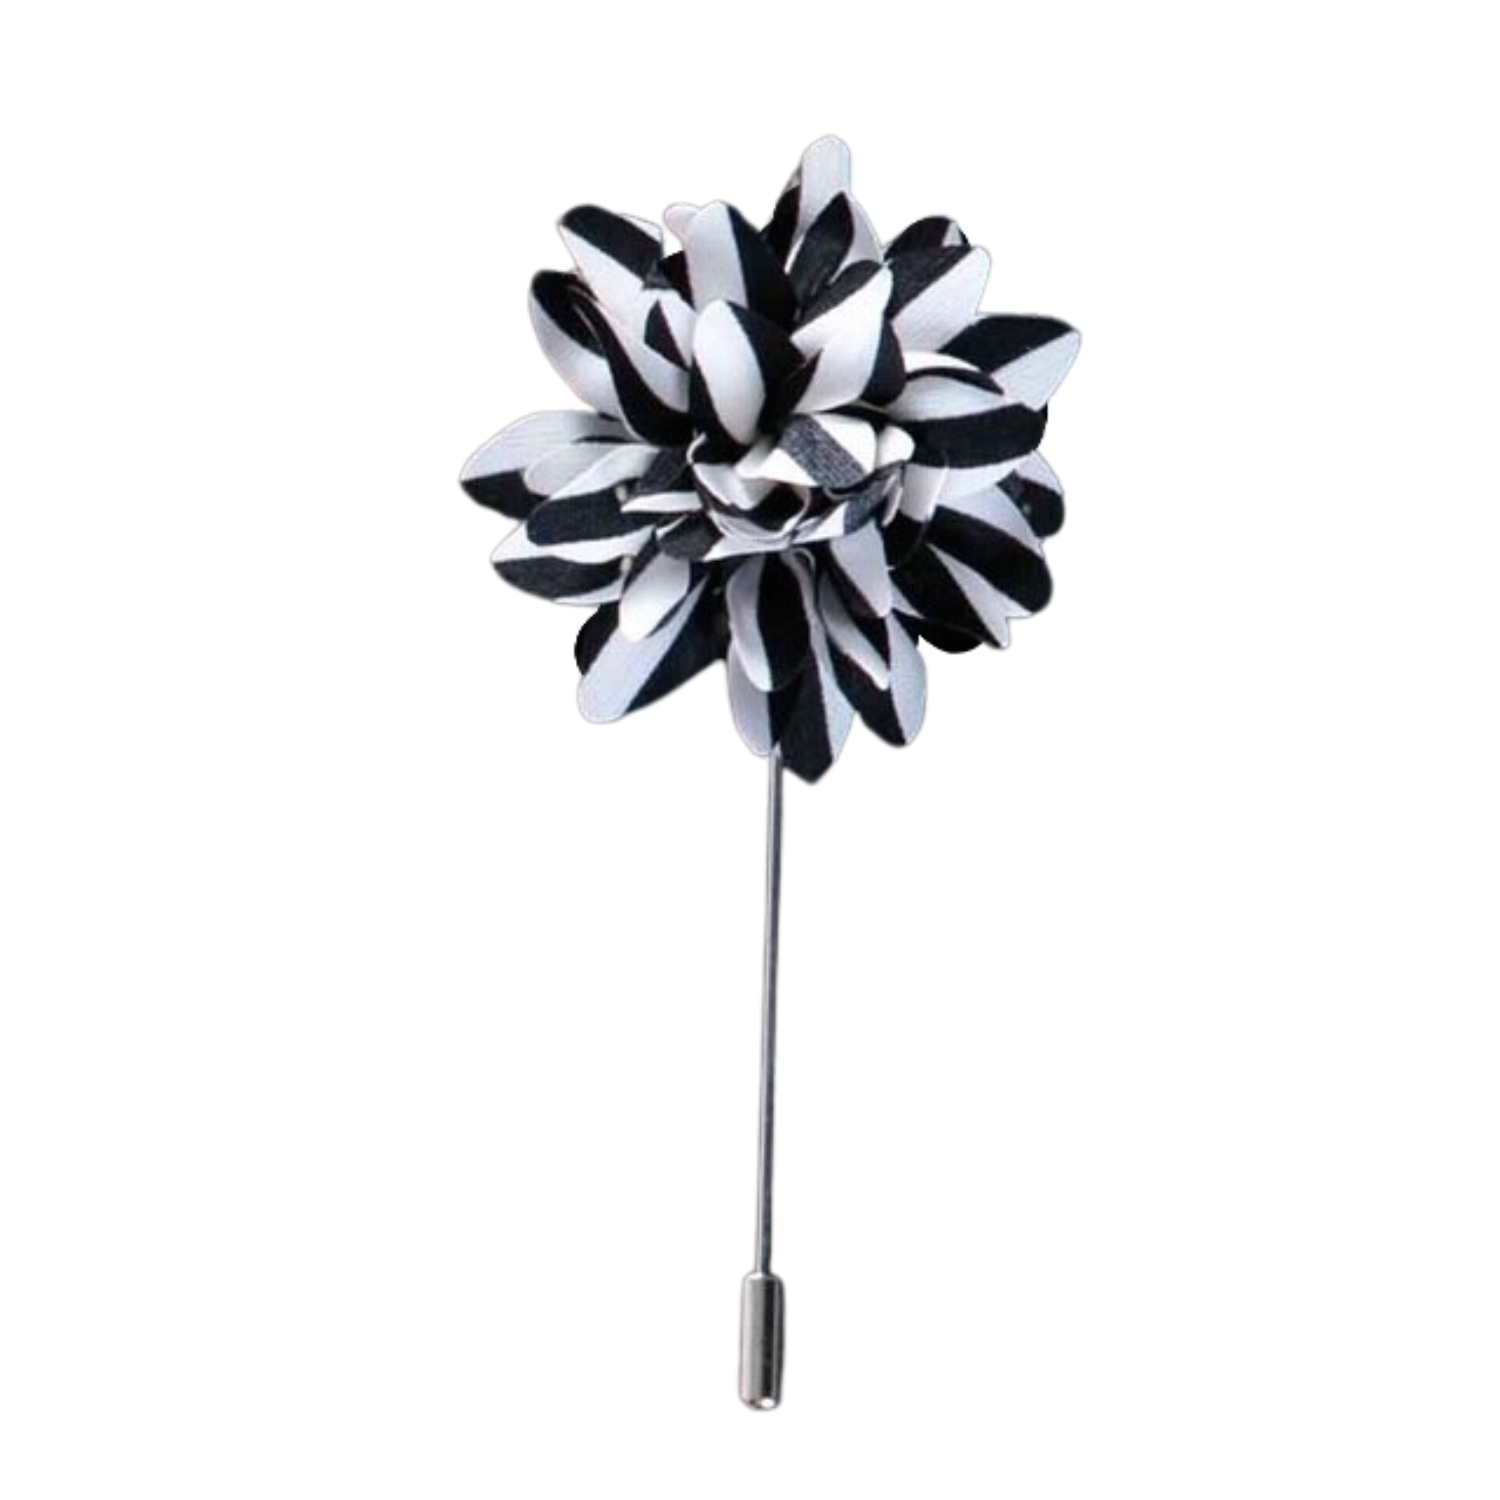 A Black, White Stripe Flower Lapel Pin